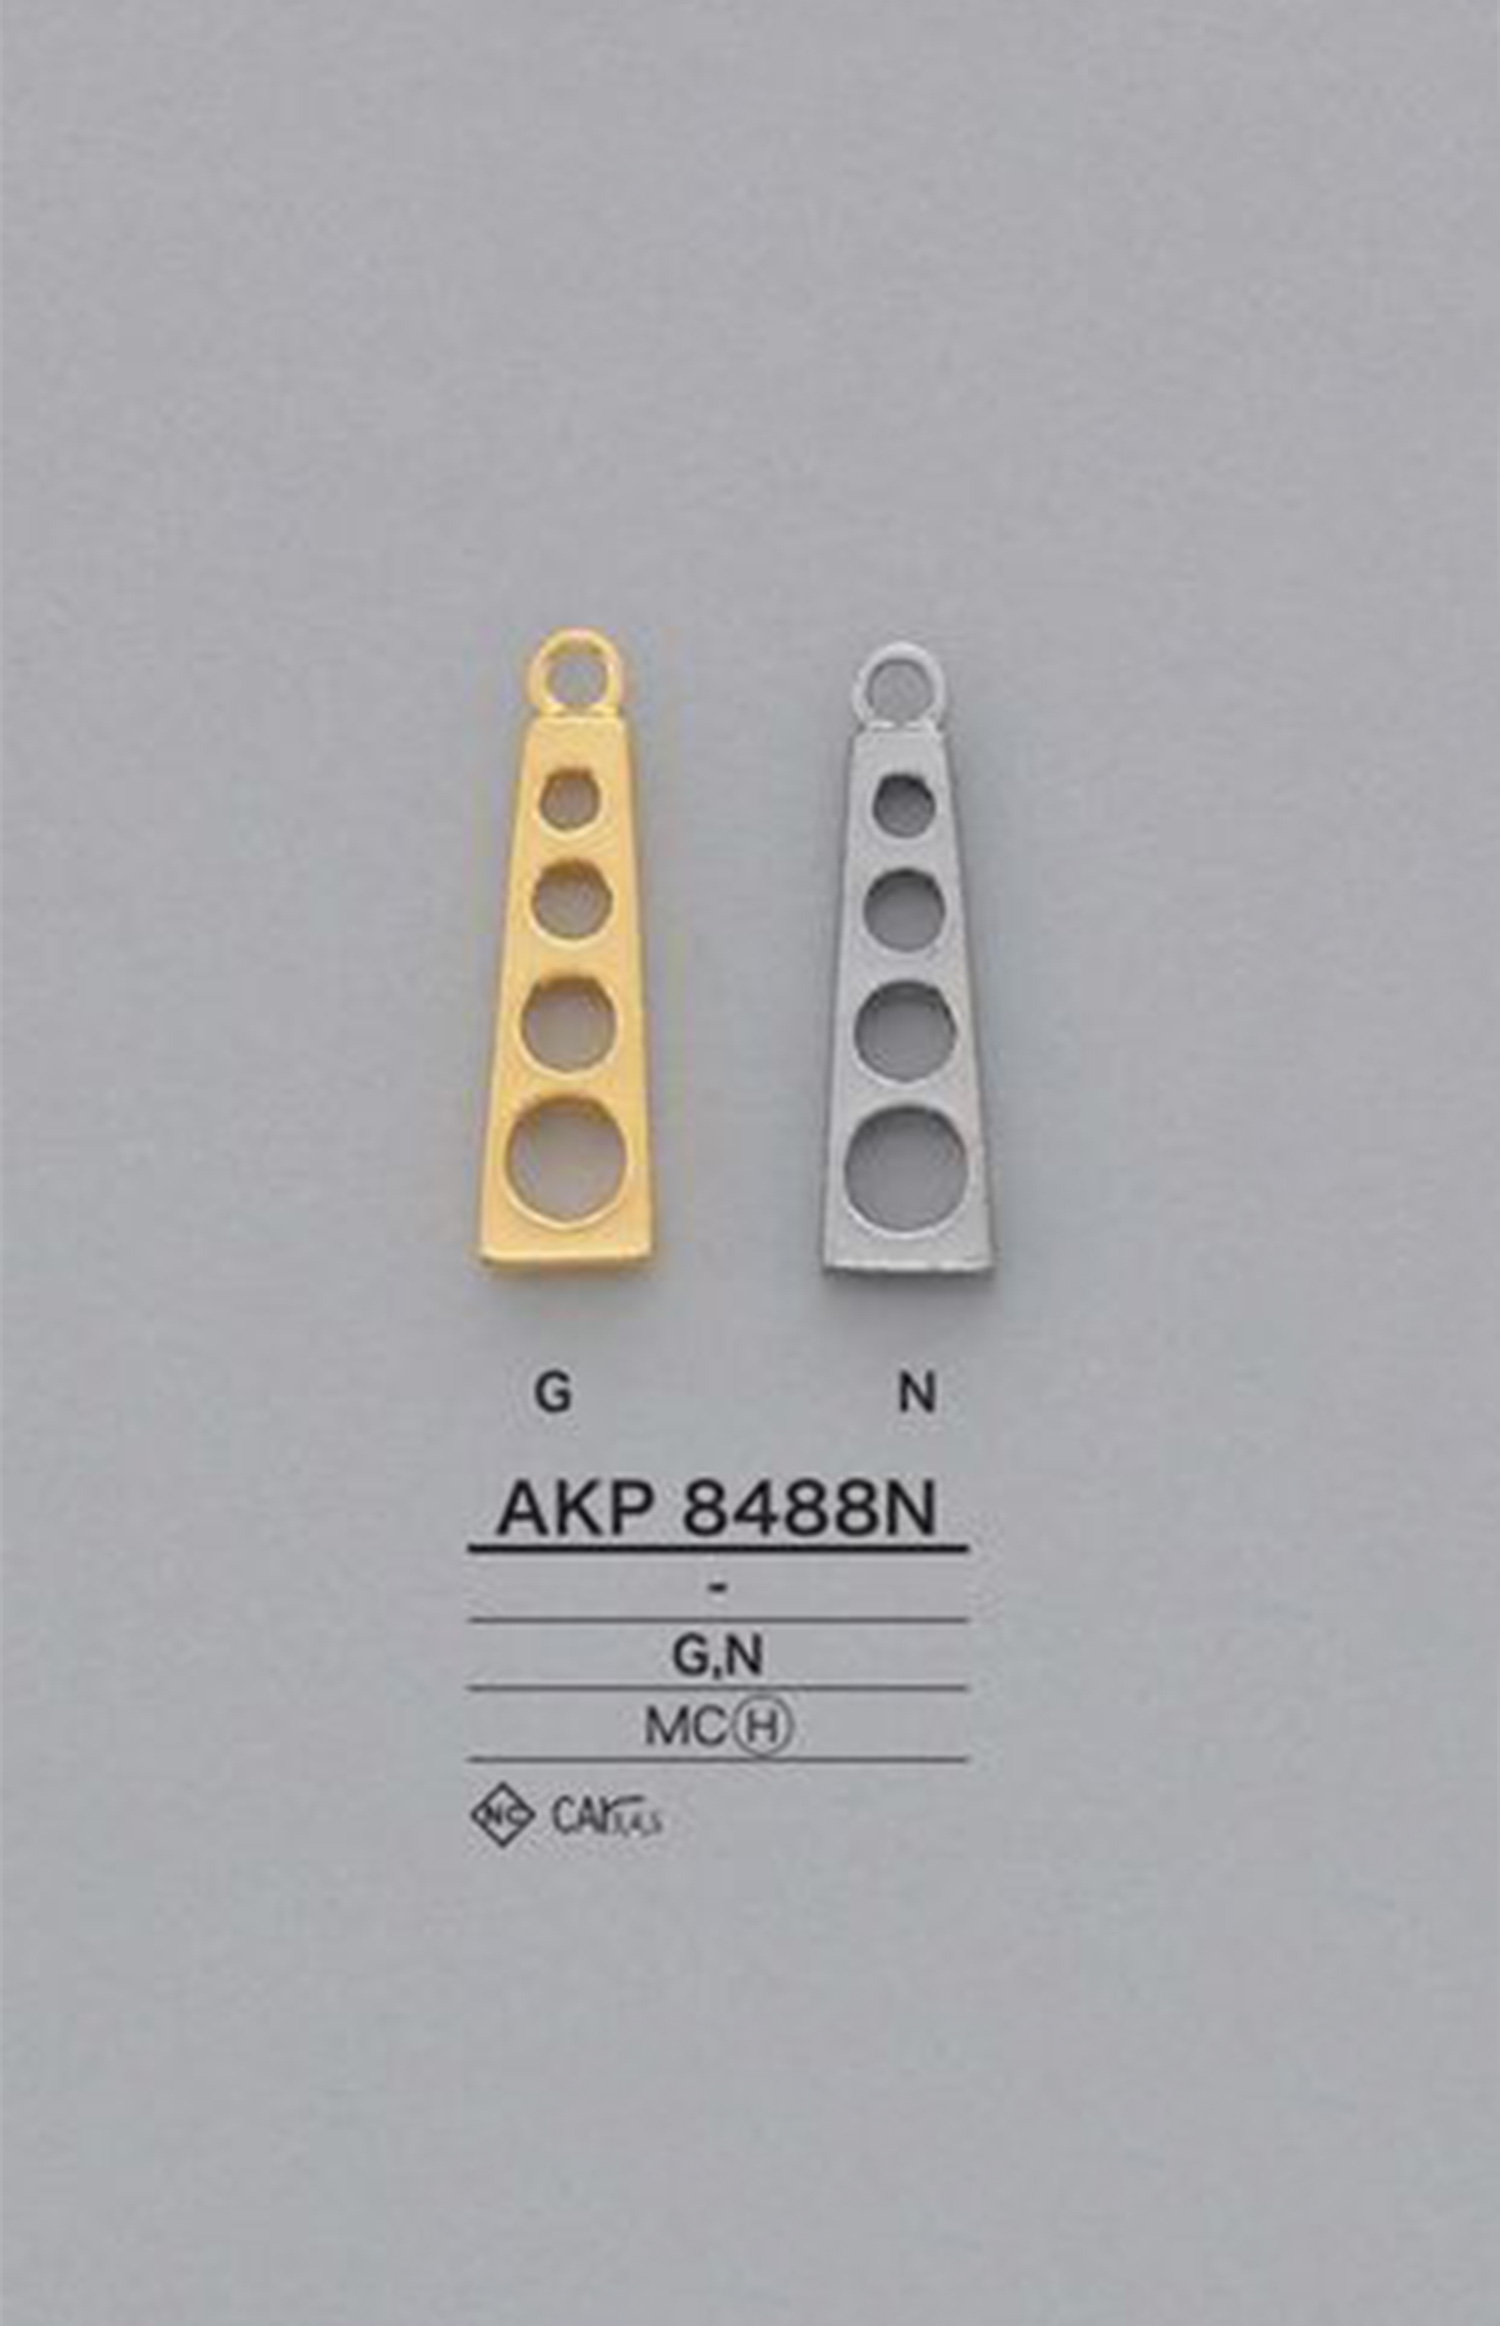 AKP8488N Round Hole Zipper Point (Pull Tab) IRIS